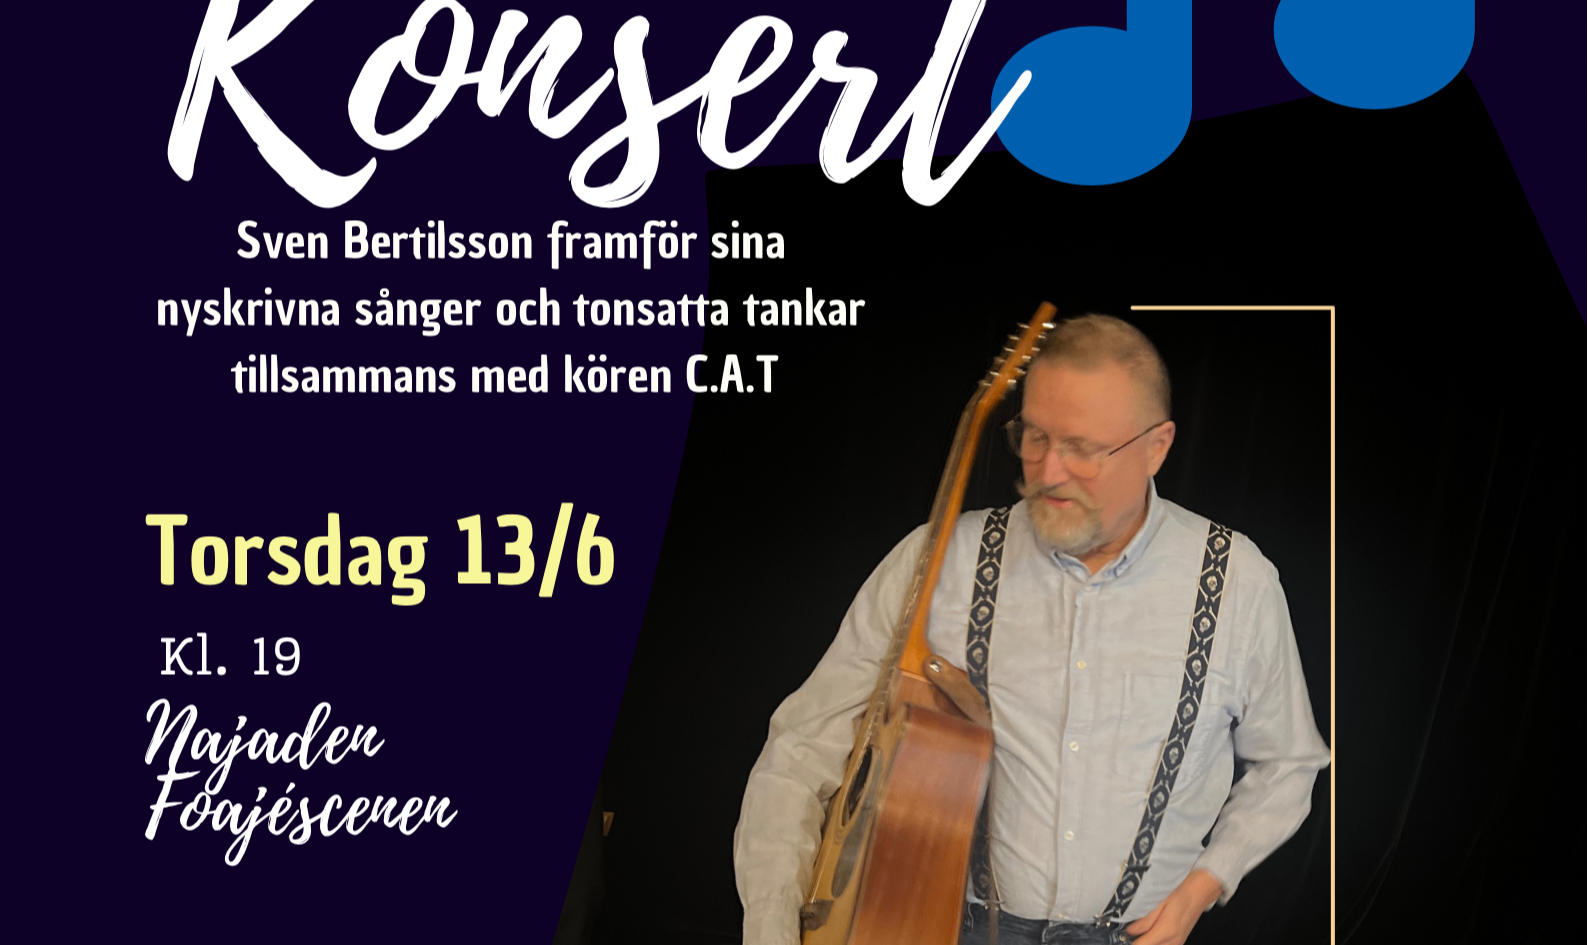 Bildbeskrivning saknas för evenemanget: Konsert Sven Bertilsson framför nyskrivna sånger och tonsatta tankar tillsammans med kören C.A.T